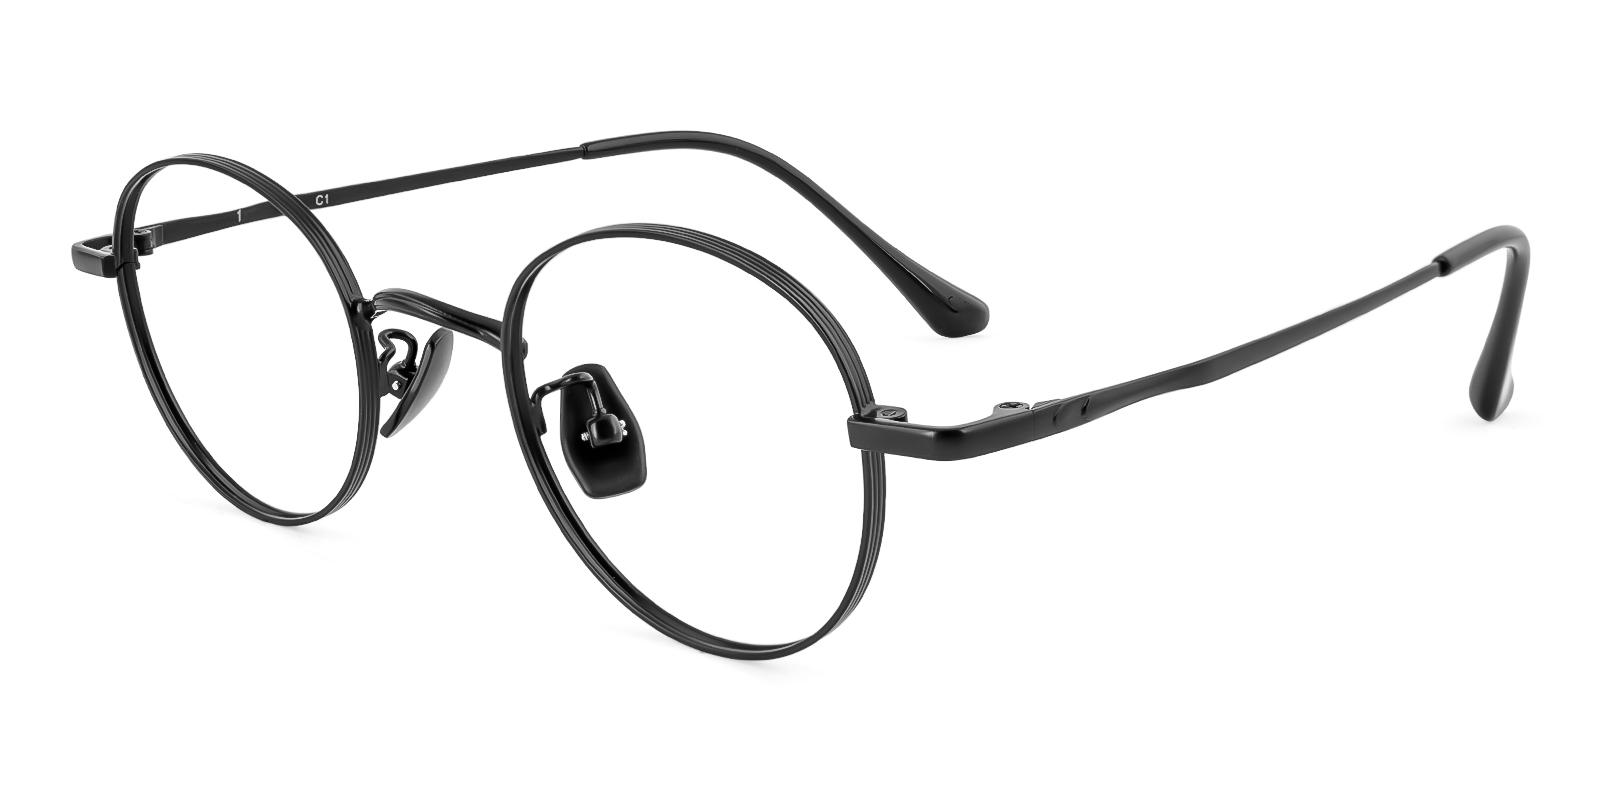 Candarian Black Titanium Eyeglasses , NosePads Frames from ABBE Glasses